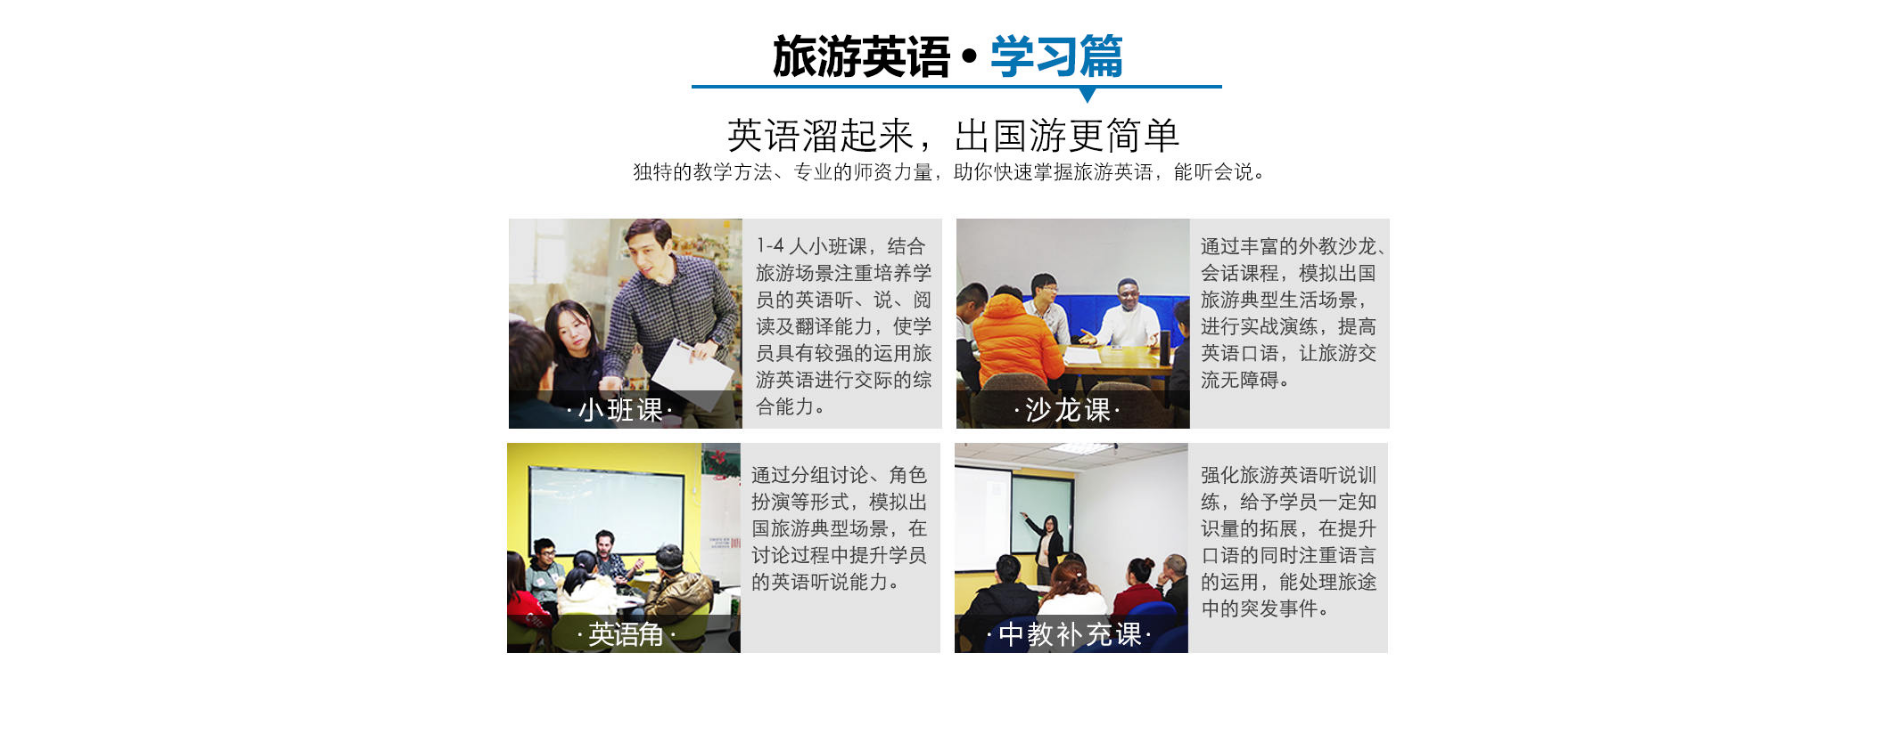 武汉旅游英语口语培训课程